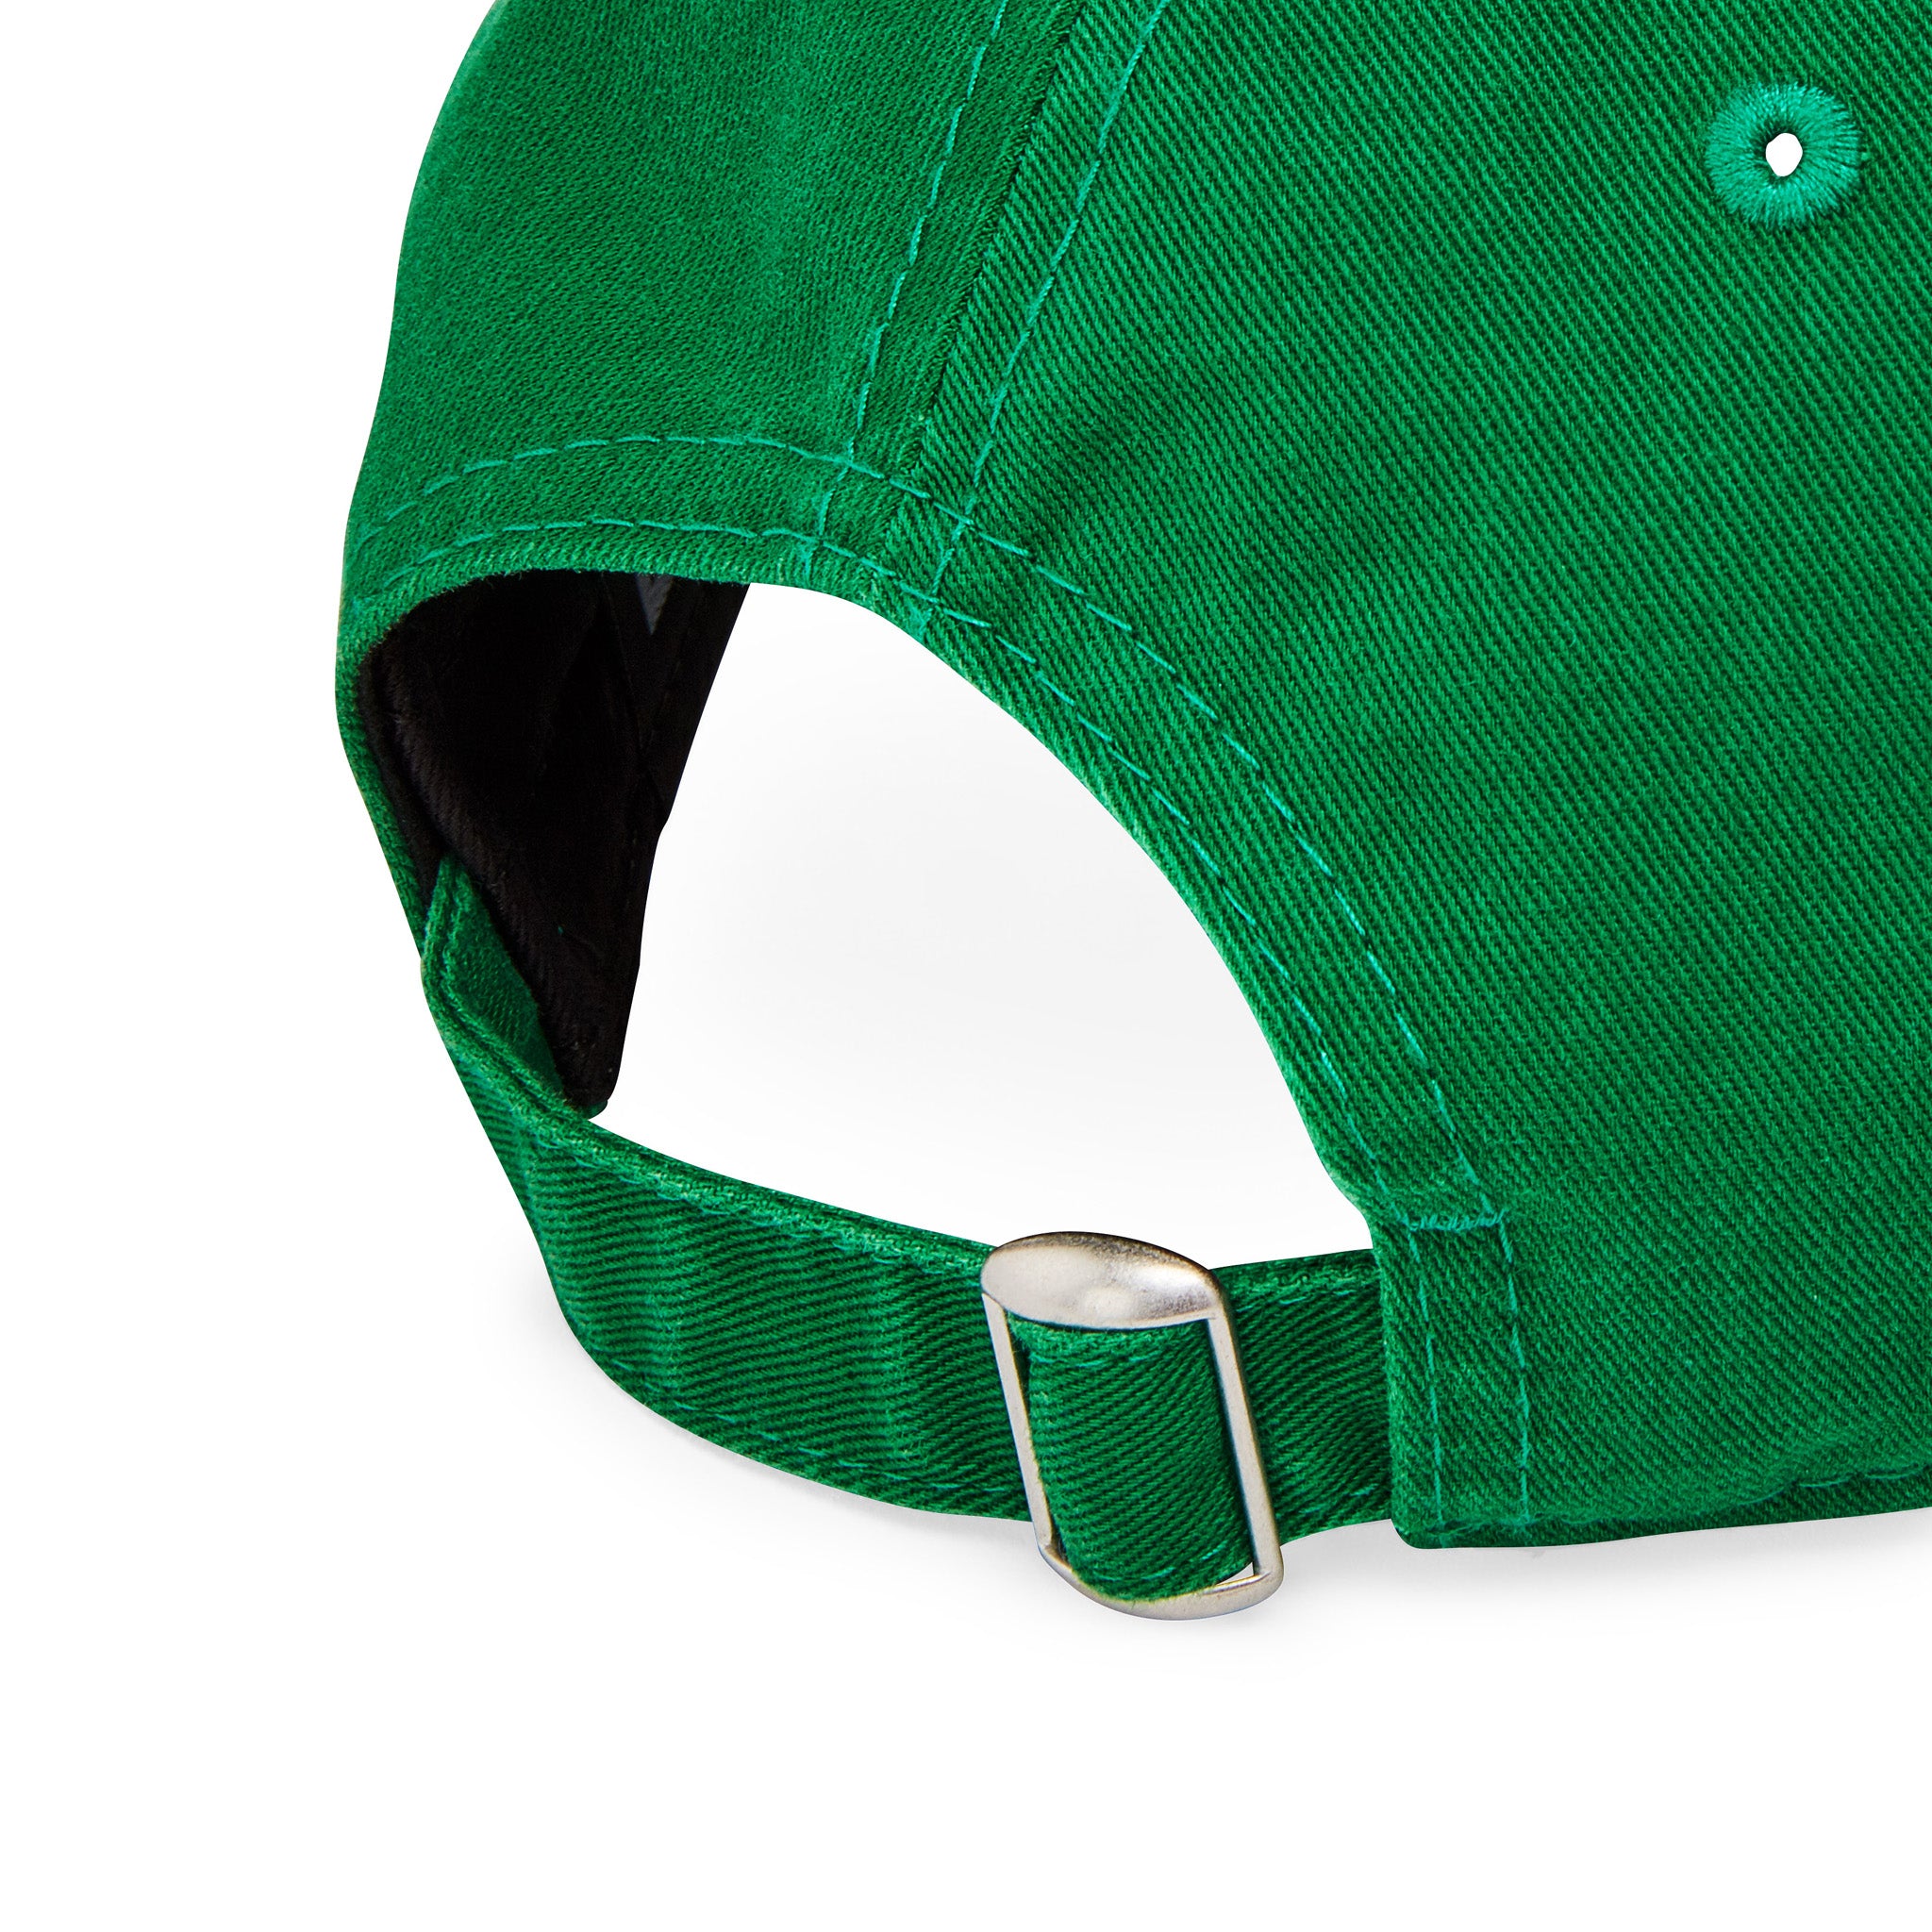 MoMA NY Yankees Adjustable Green Kelly Store – Baseball Cap - Design MoMA